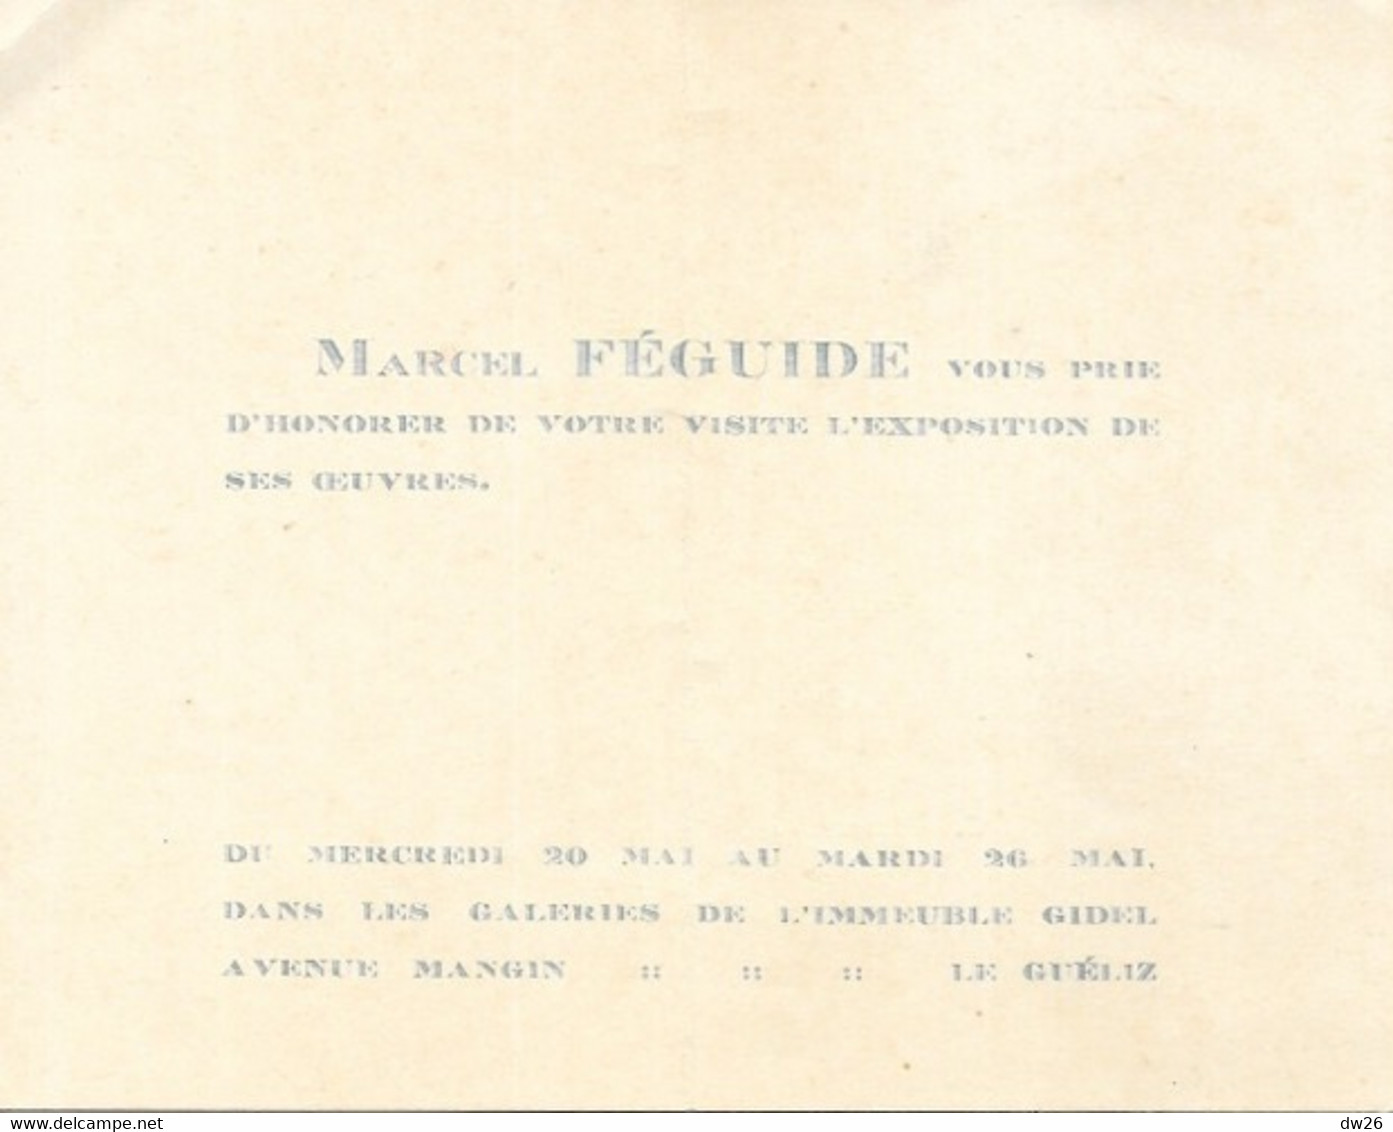 Pastels Et Huile Par Marcel Féguide - Invitation Exposition 20-26 Mai 1931, Le Guéliz (Avenue Mangin, Marrakech) - Pastels